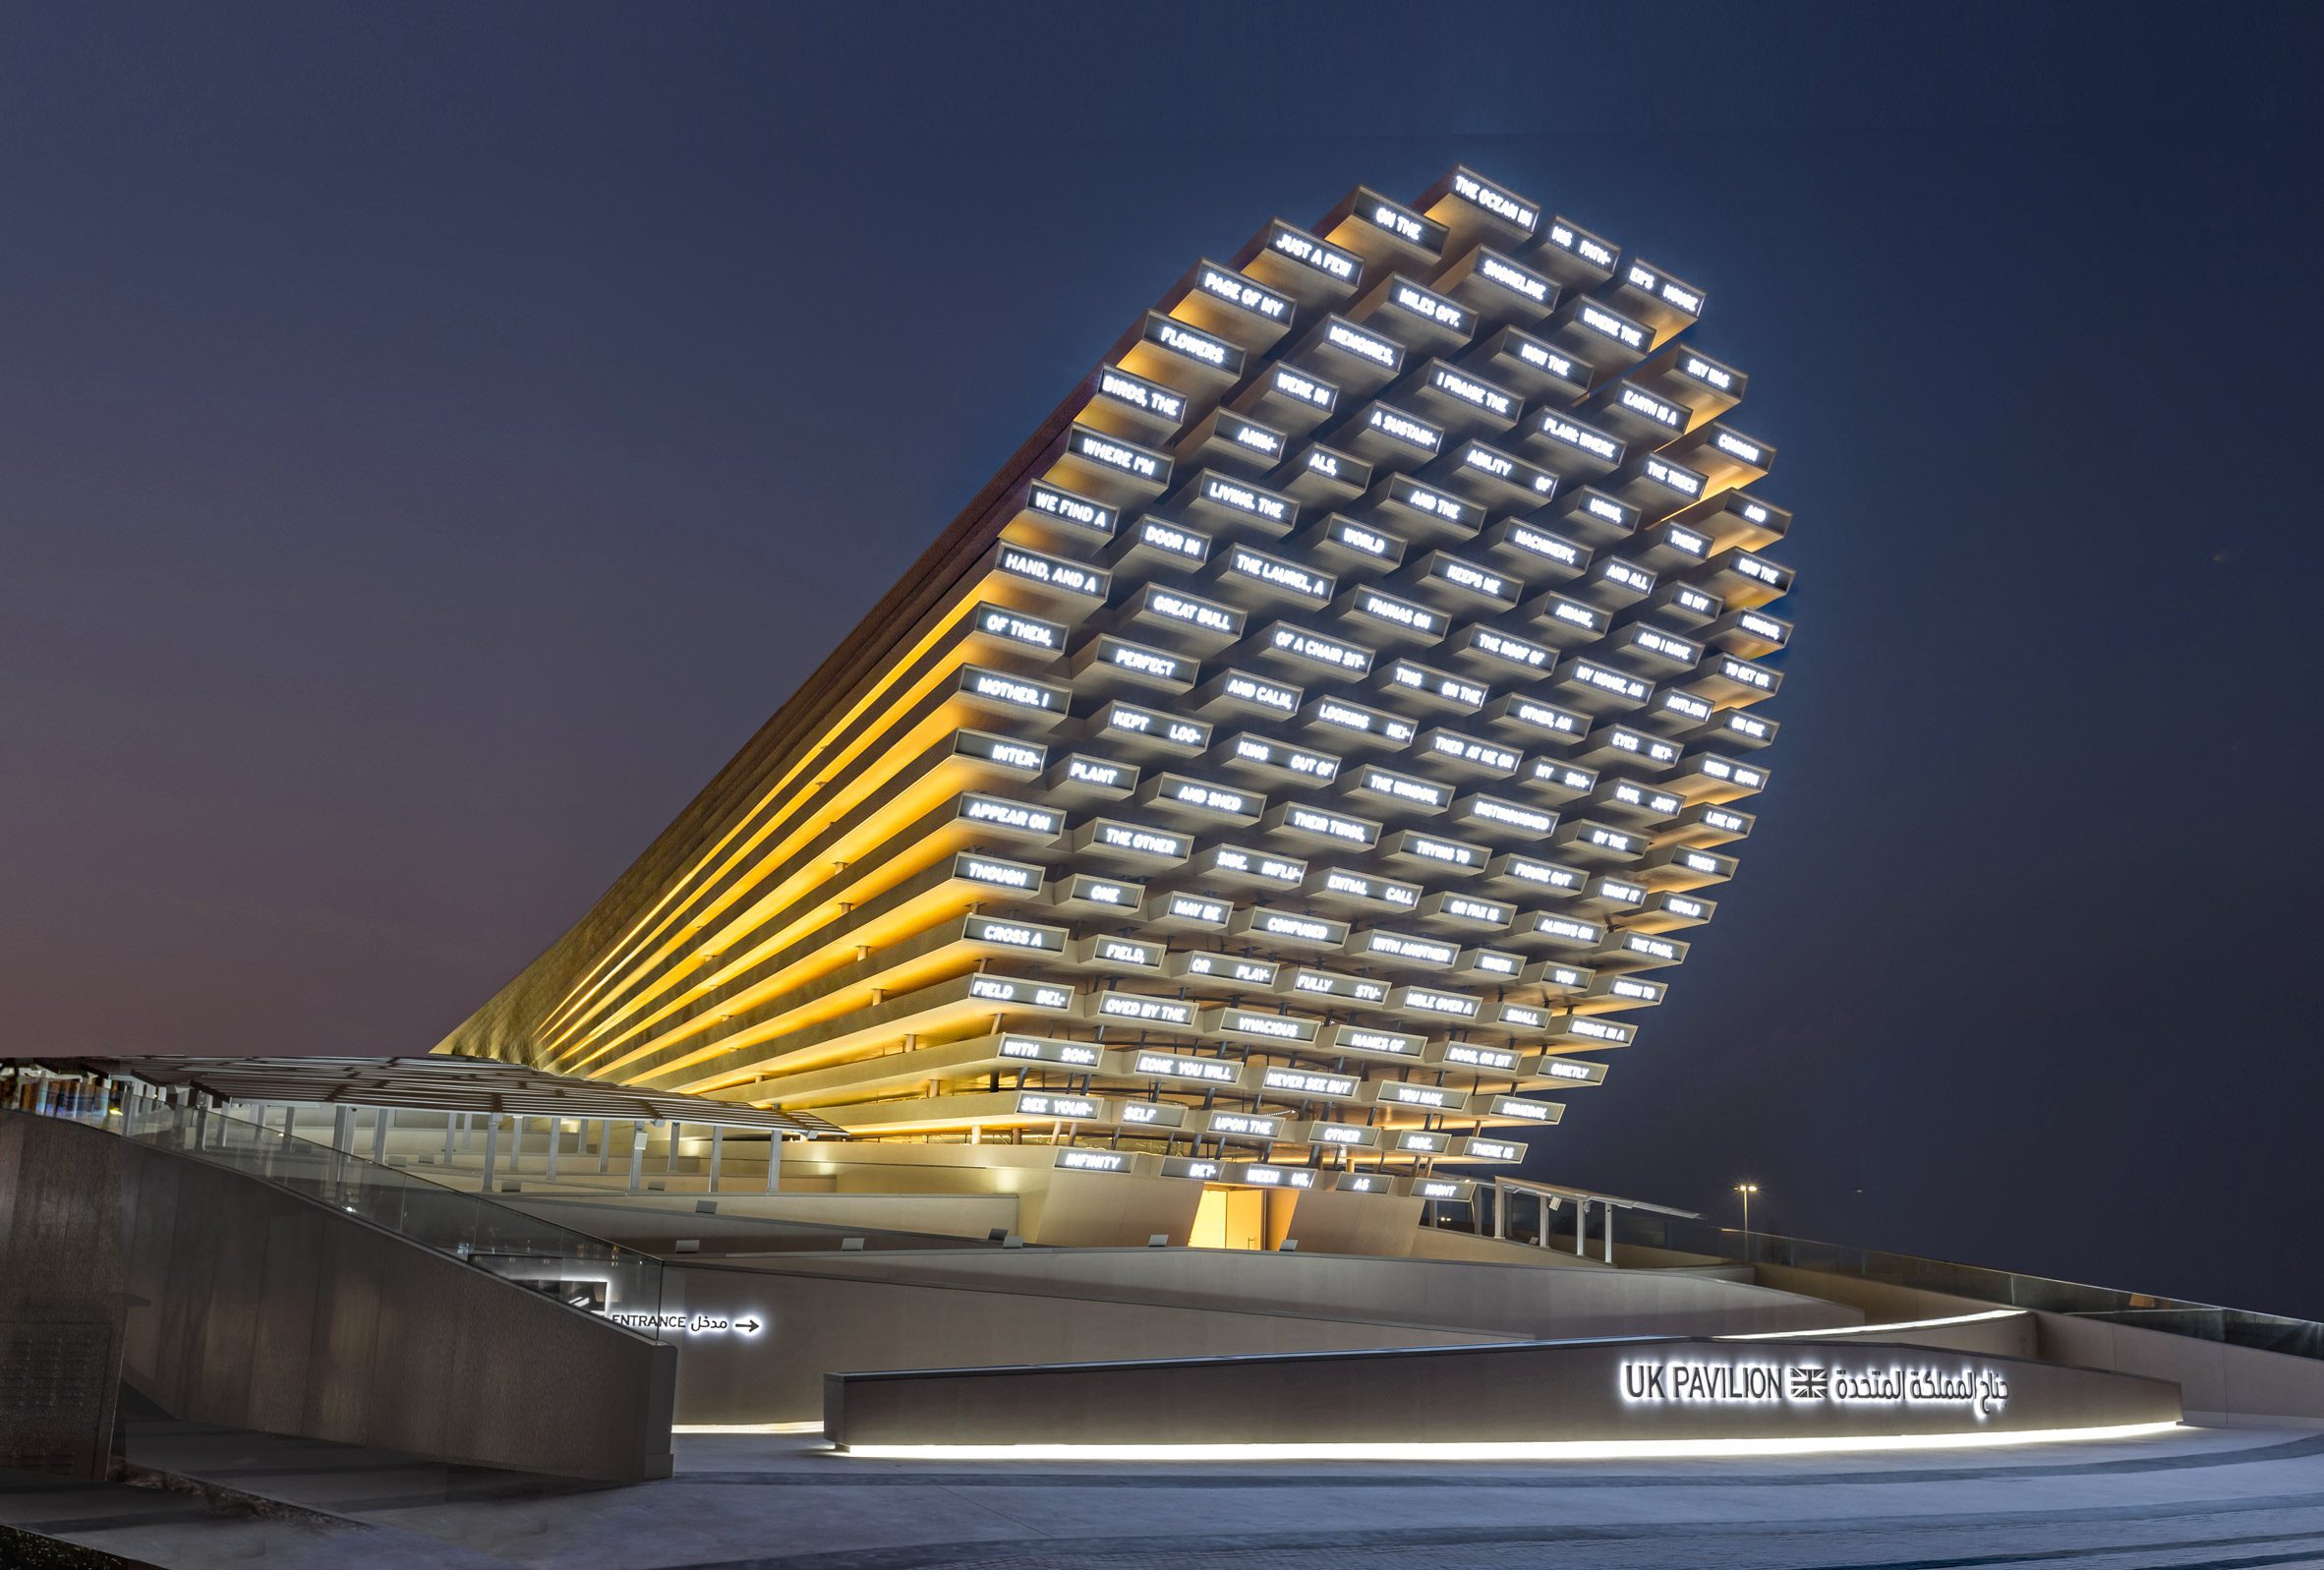 Dubai Expo UK pavilion